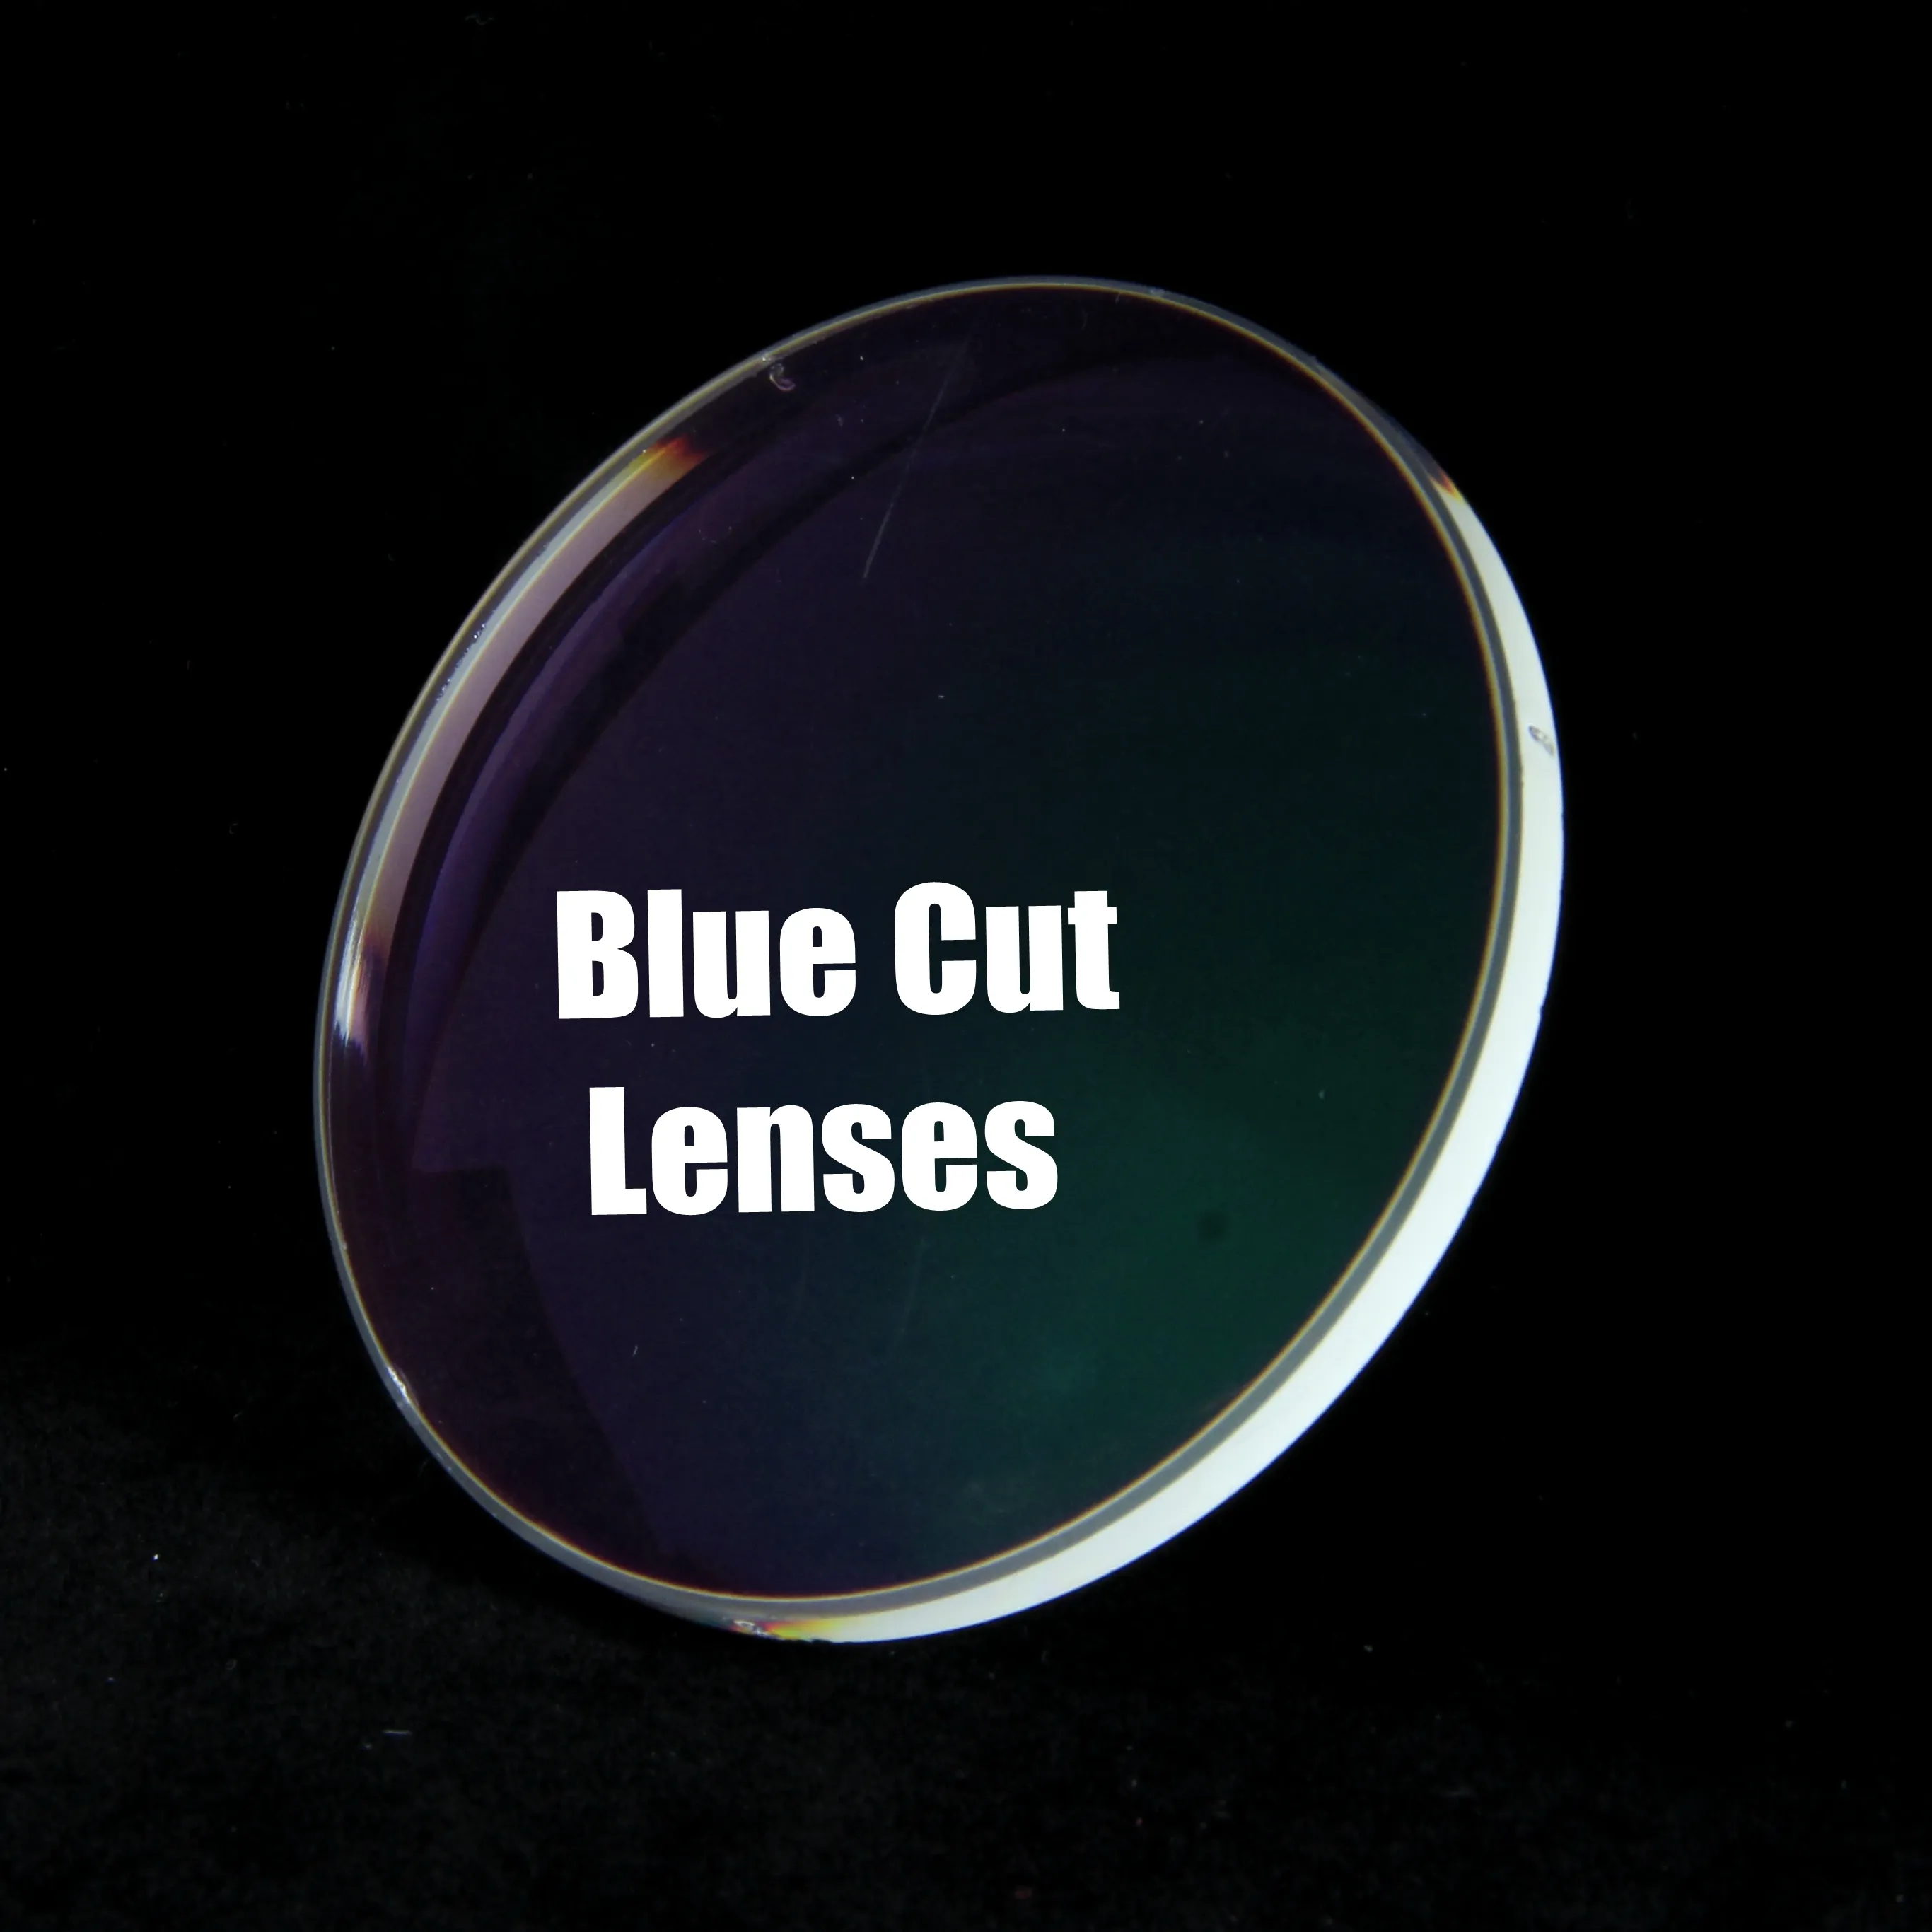 Danyang lens fabrika yüksek kalite 1.56 mavi ışık engelleme AR kaplama gözlük mavi kesim optik lensler